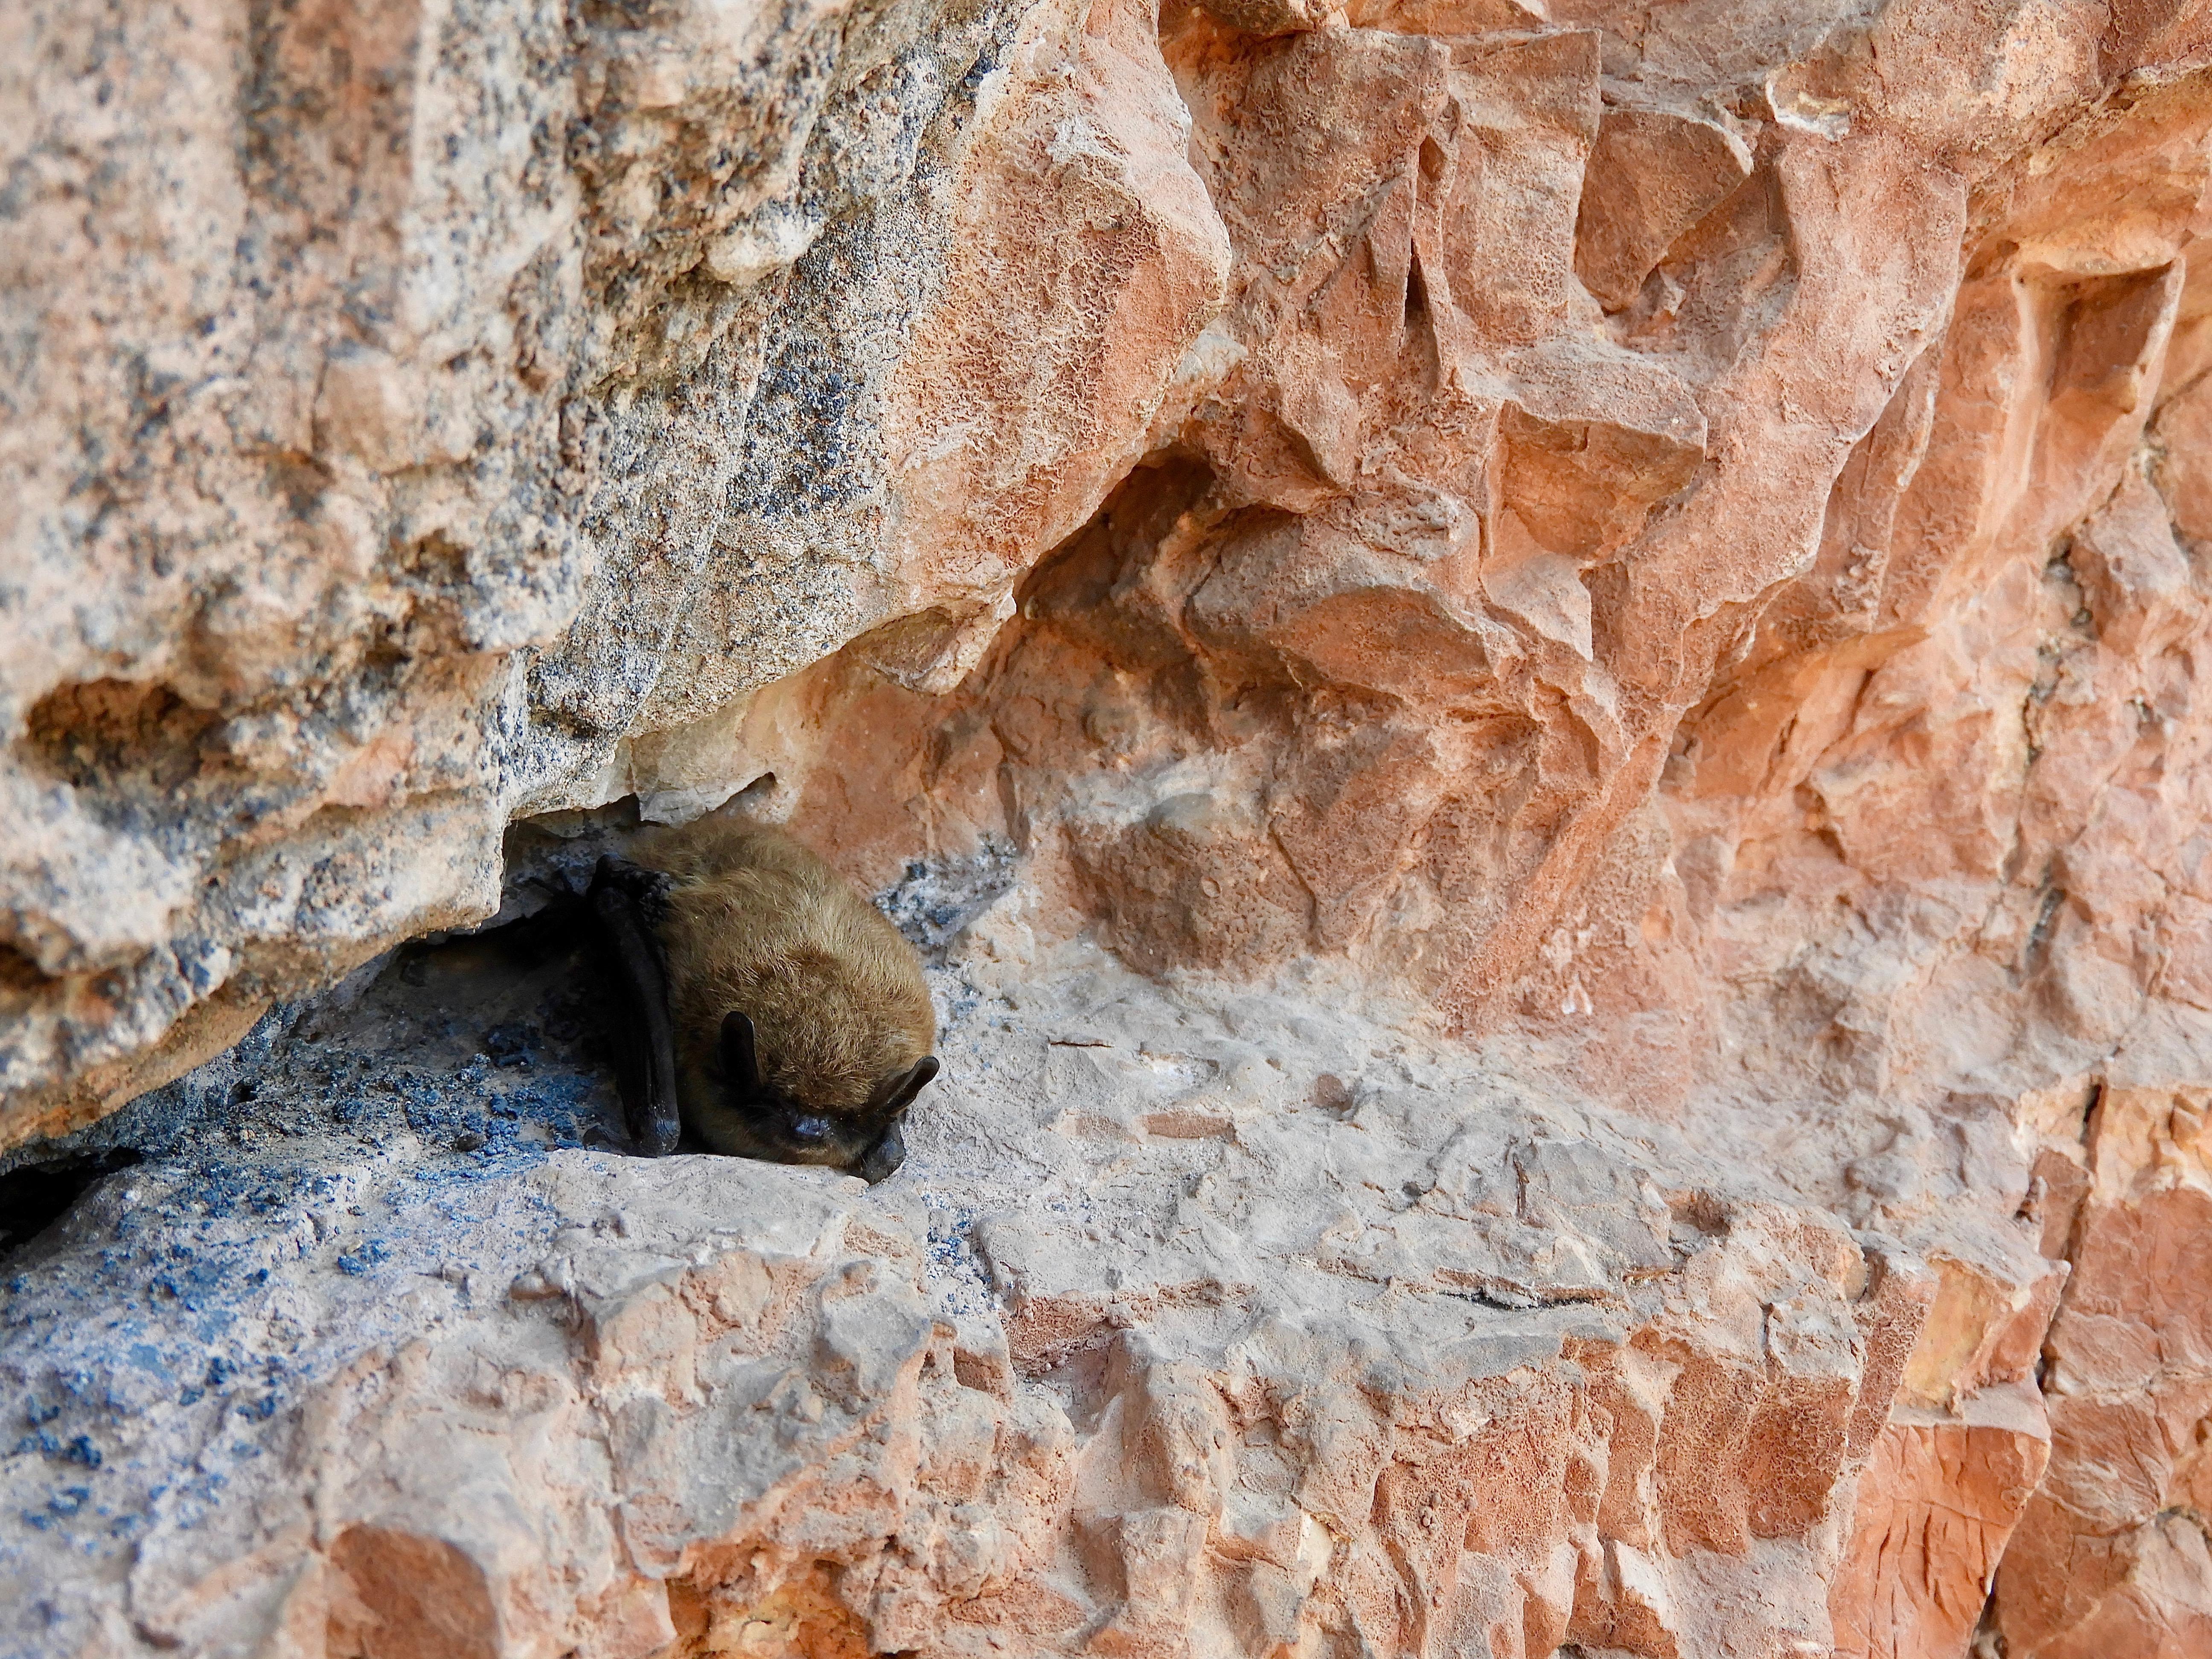 Bats at Jewel Cave